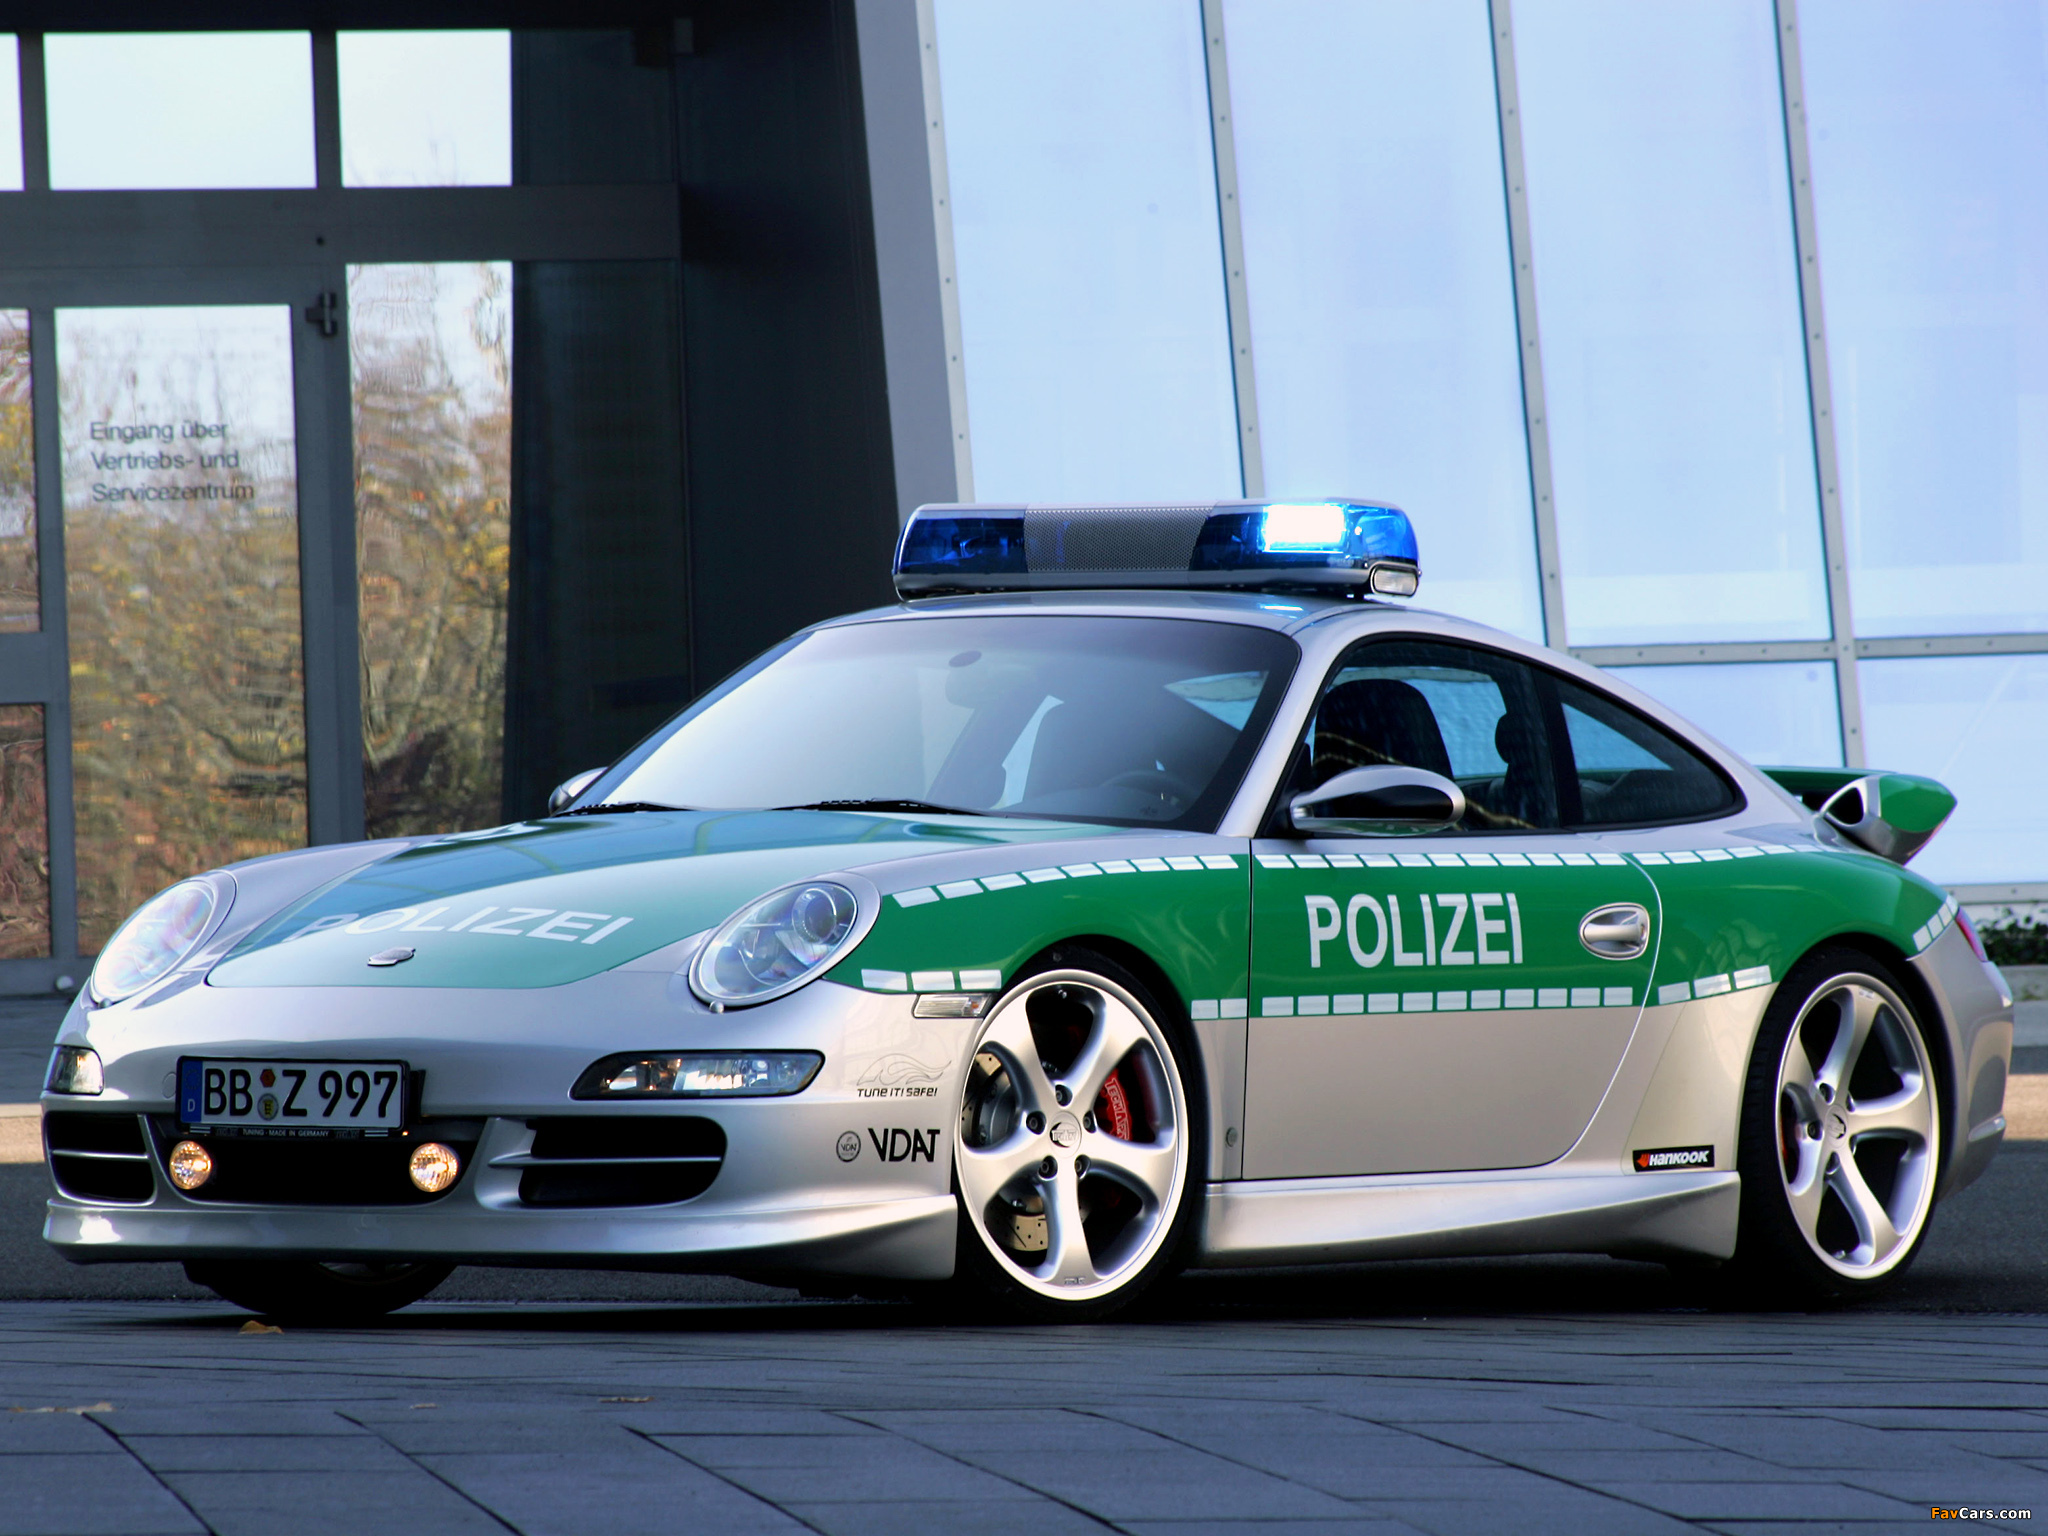 Зеленая полицейская машина. Polizei Порше 911. 911 Порше Police. Полиция Дубай Порше 911. Полицейский Porsche 911.